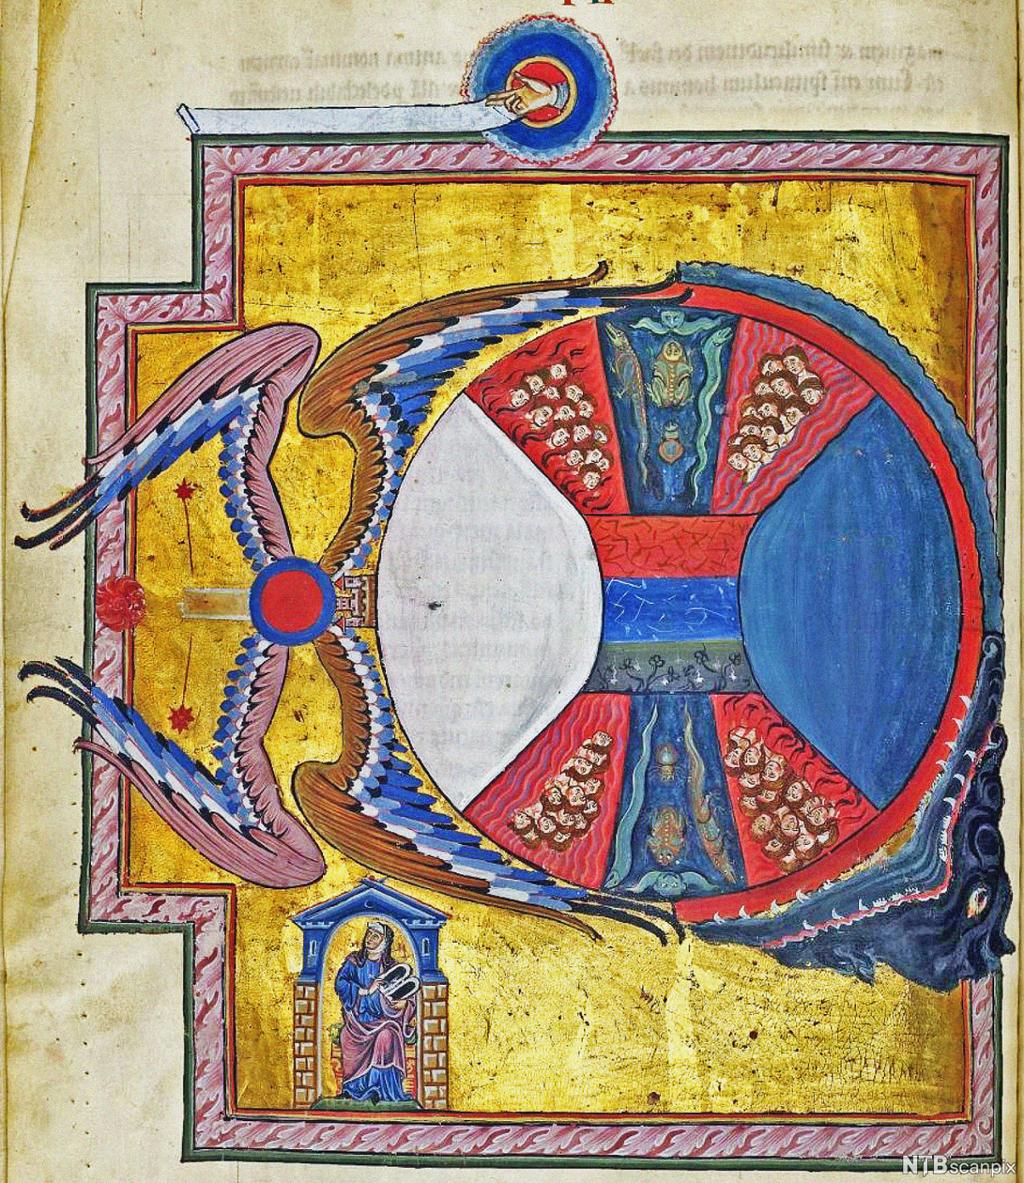 Maleri av sirkel omsluttet av vinger og et gapende monster, fylt med ulike symboler. Under sirkelen sitter en nonne i et hus. 